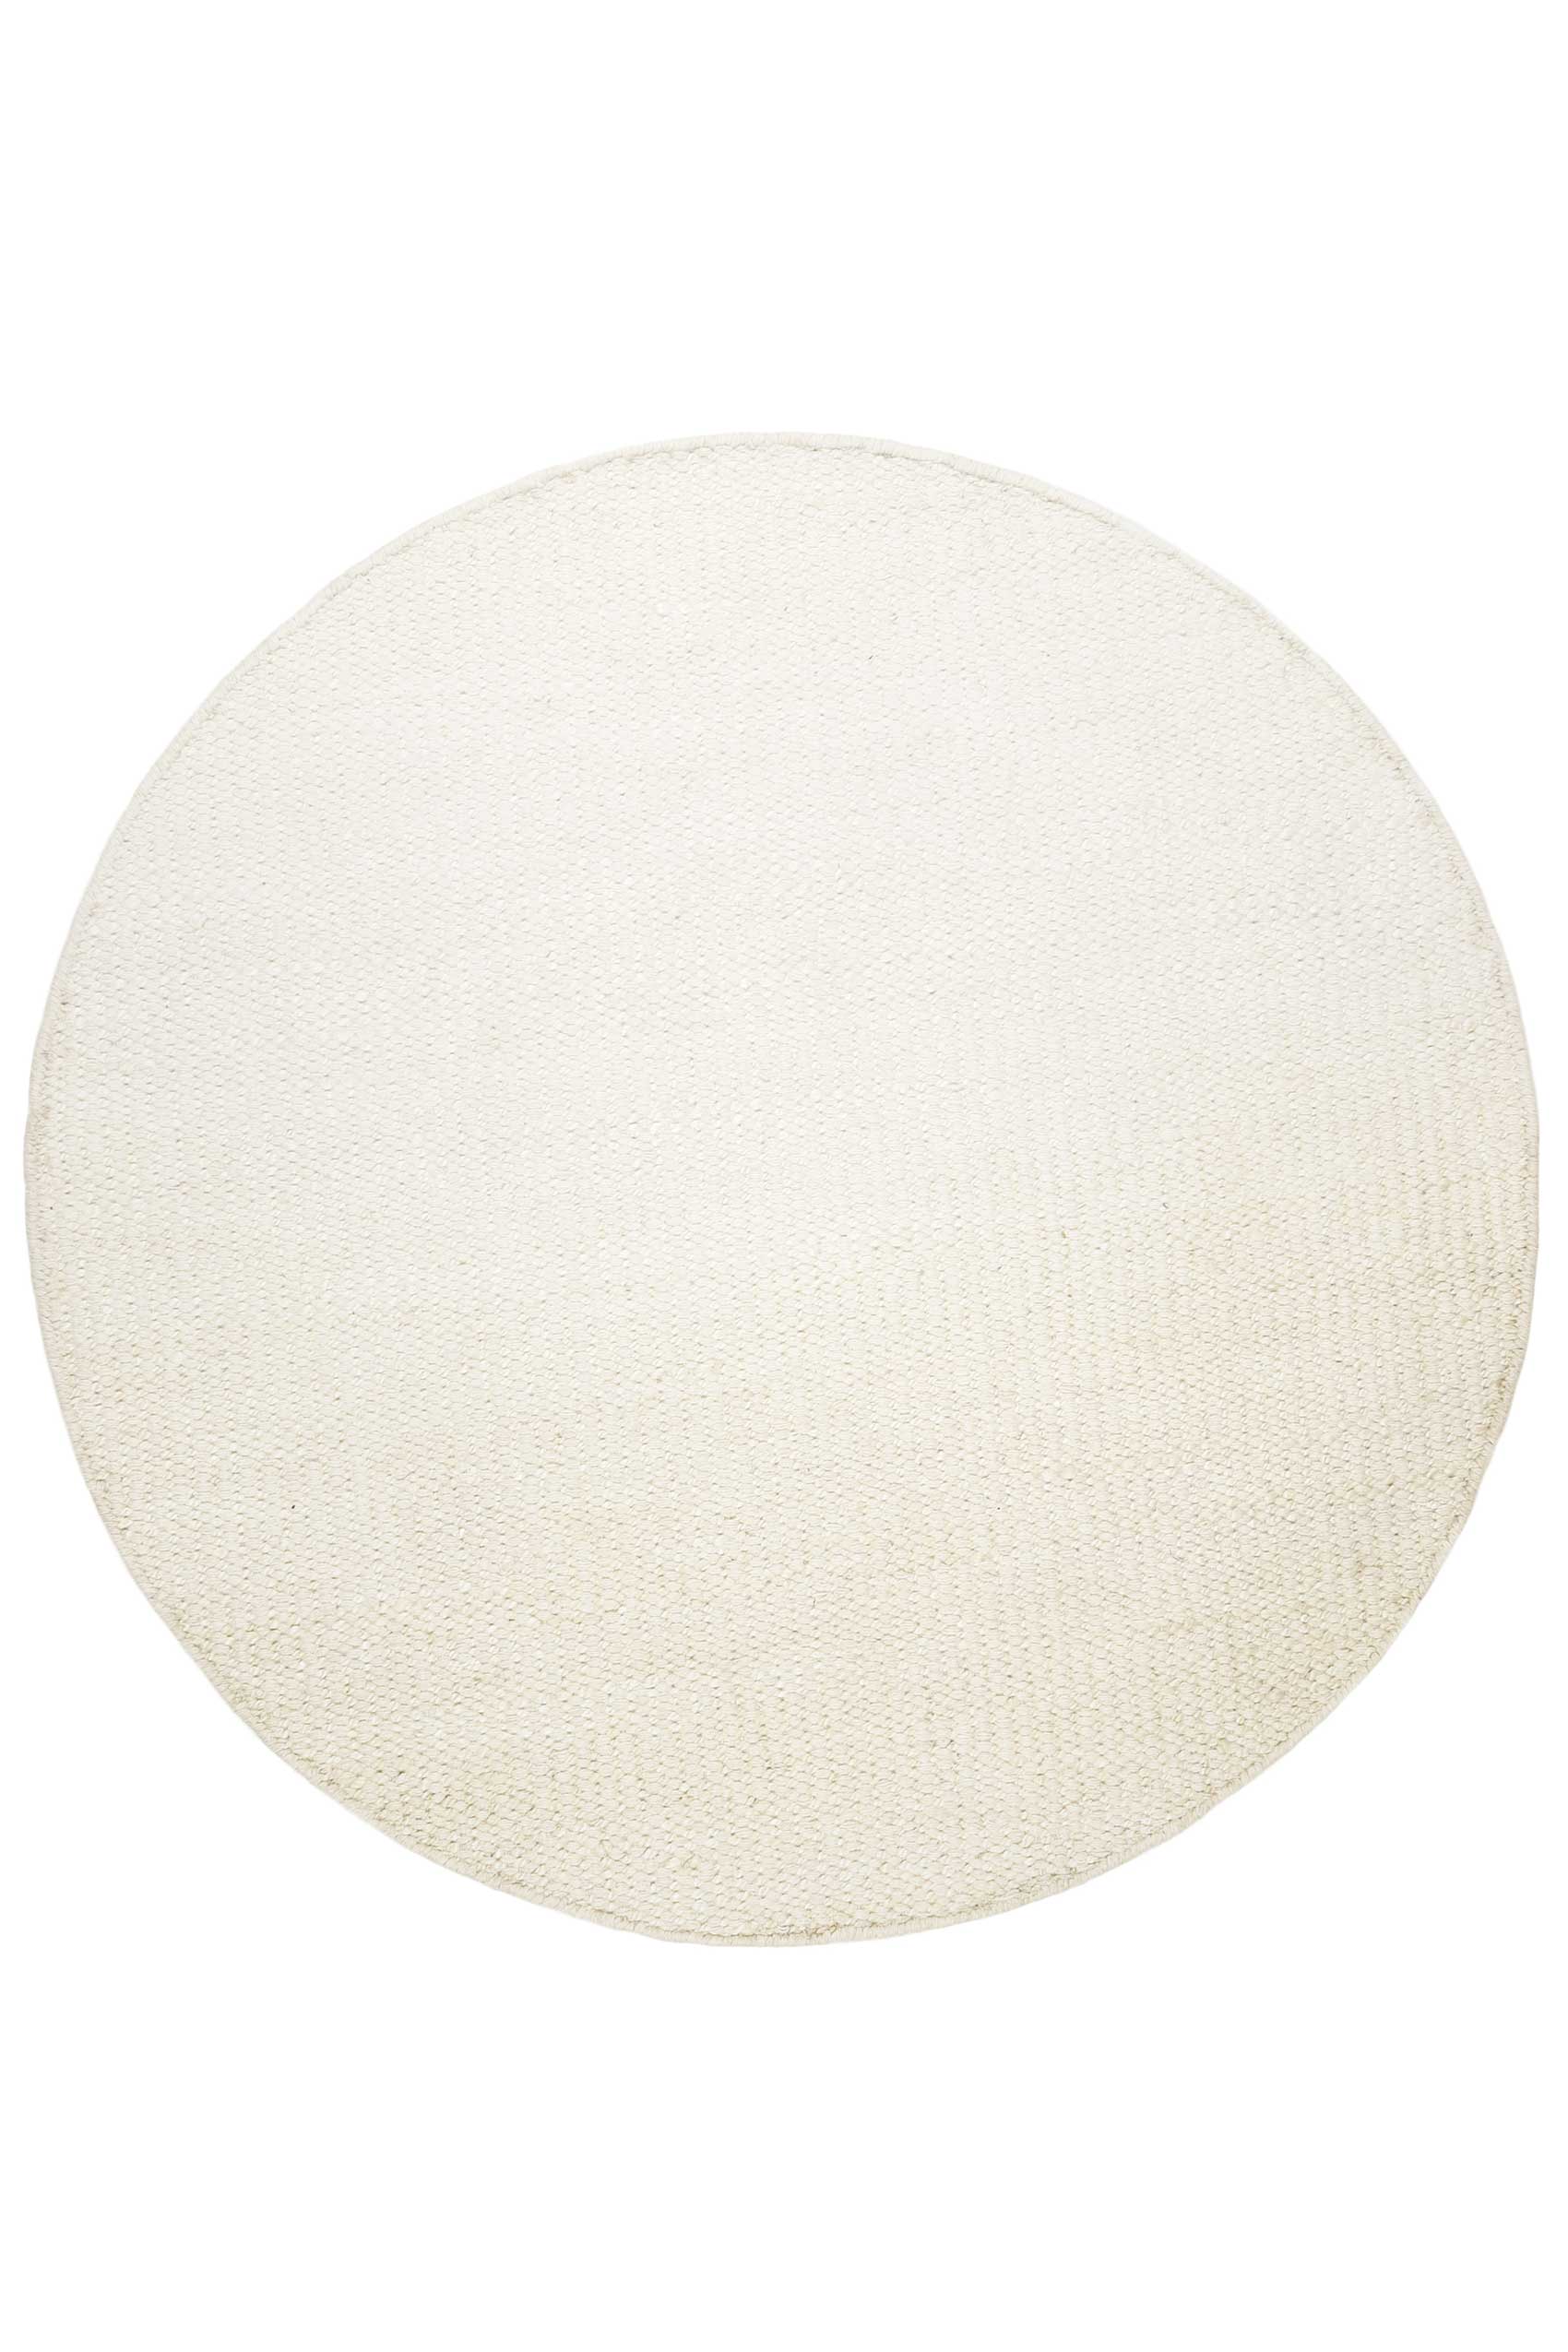 Kelim Teppich Rund Creme Weiß aus Jute & Wolle » Toulouse « Green Looop - Ansicht 1